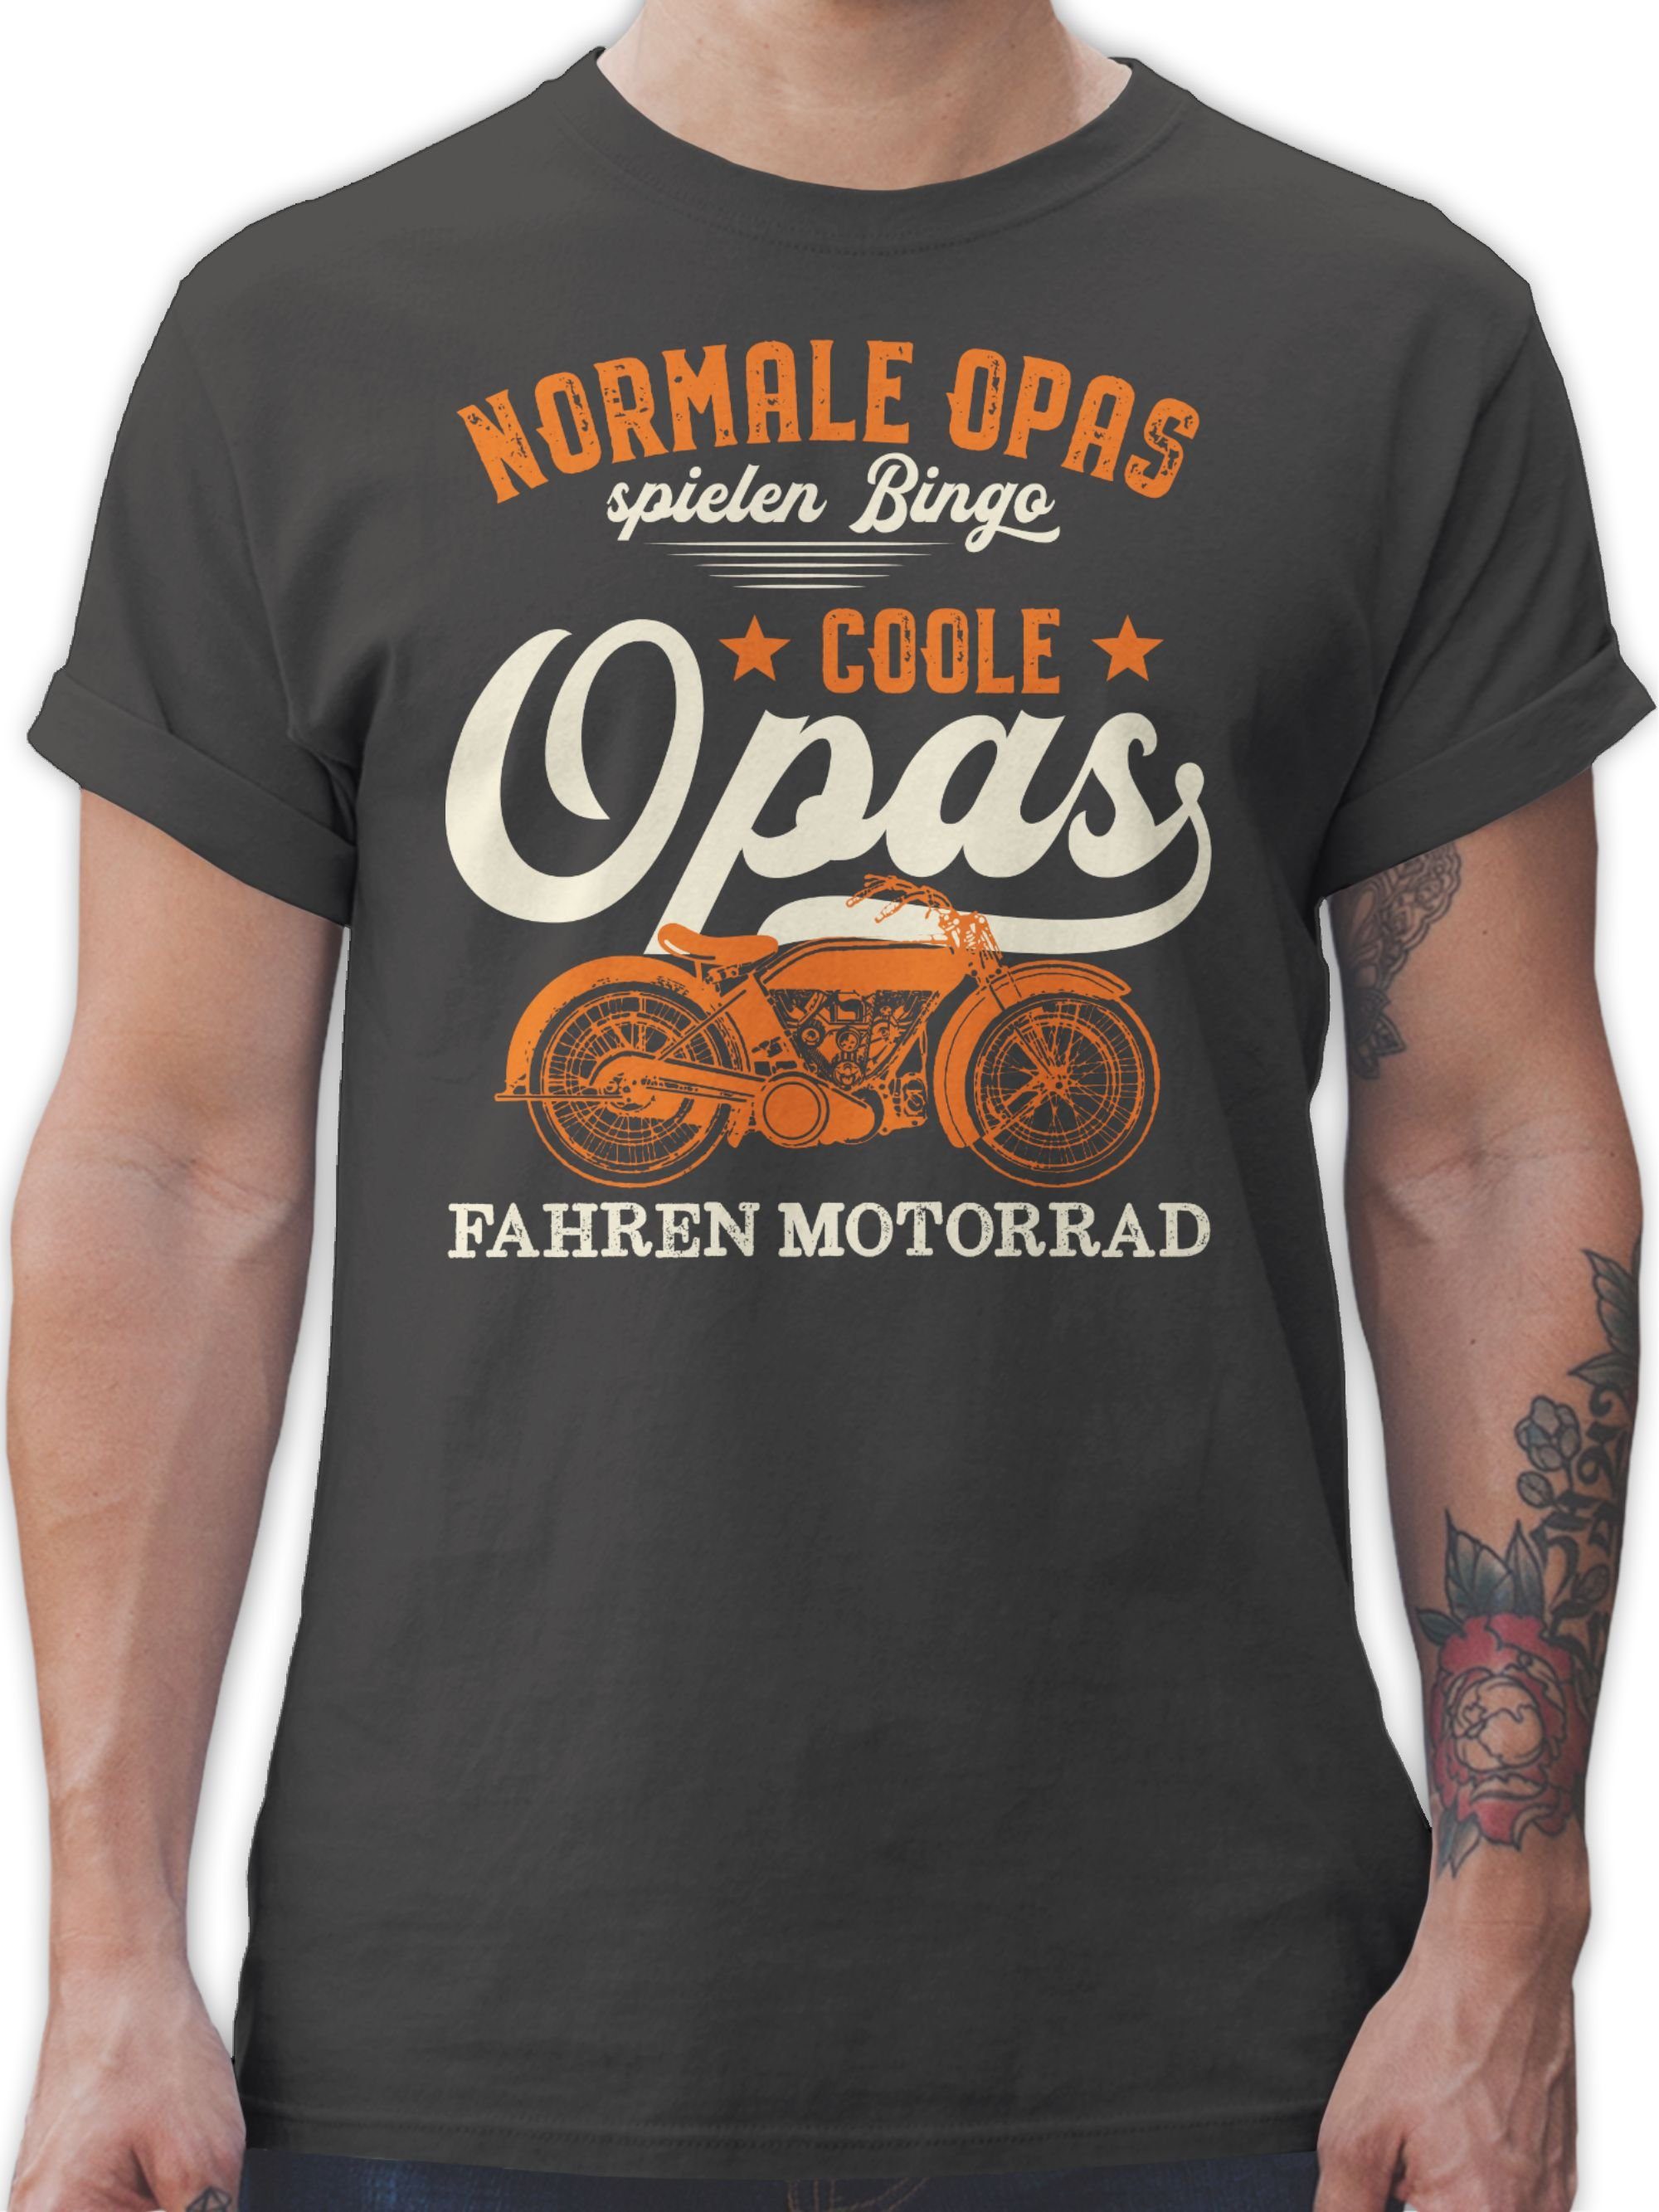 Normale Opa hell Coole fahren - - Shirtracer 02 Geschenke Opas Motorrad spielen Bingo Dunkelgrau T-Shirt Opas